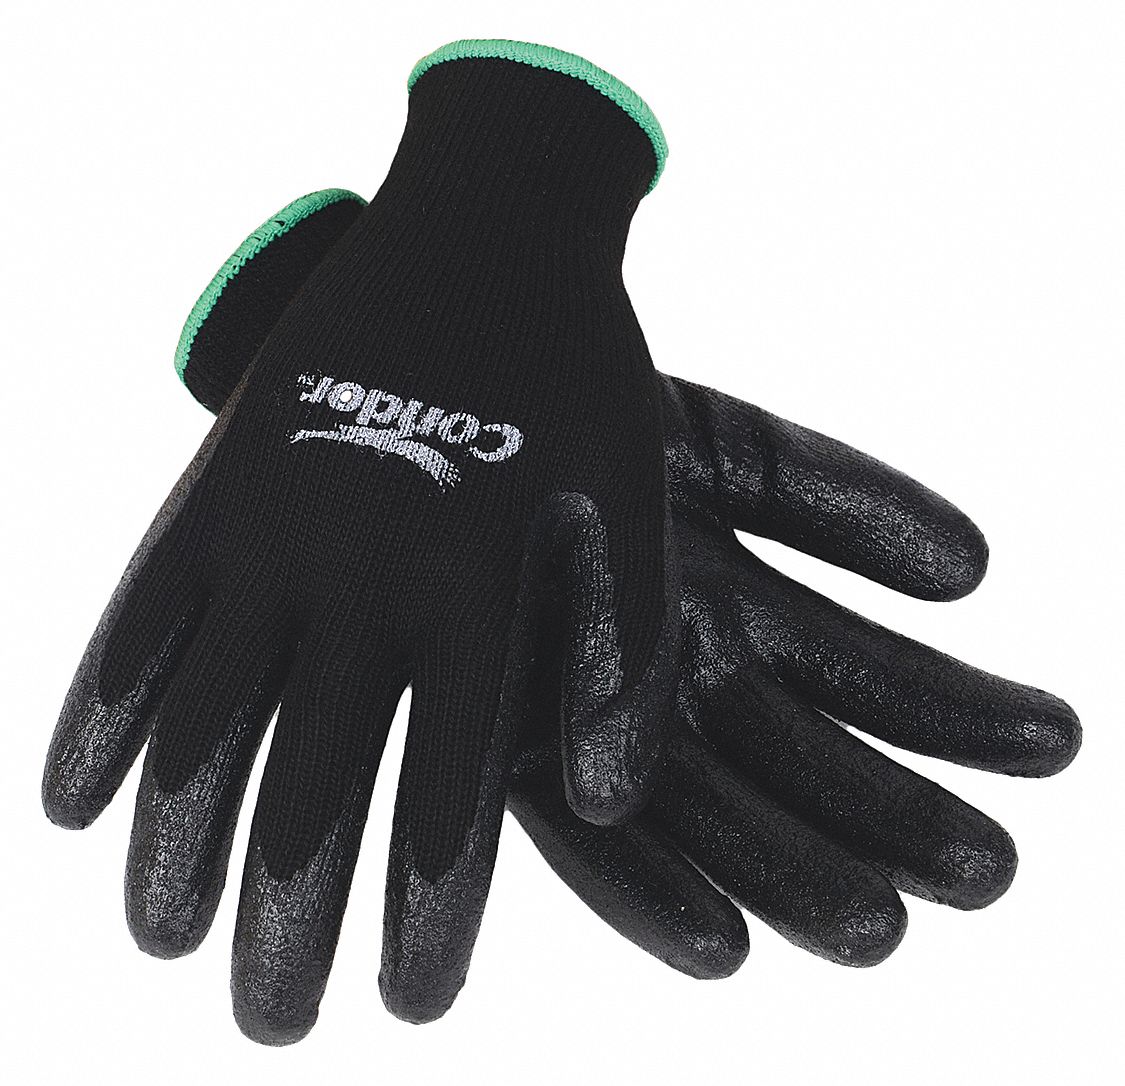 Coated Gloves,Polyester,L,PR 19L528 | eBay